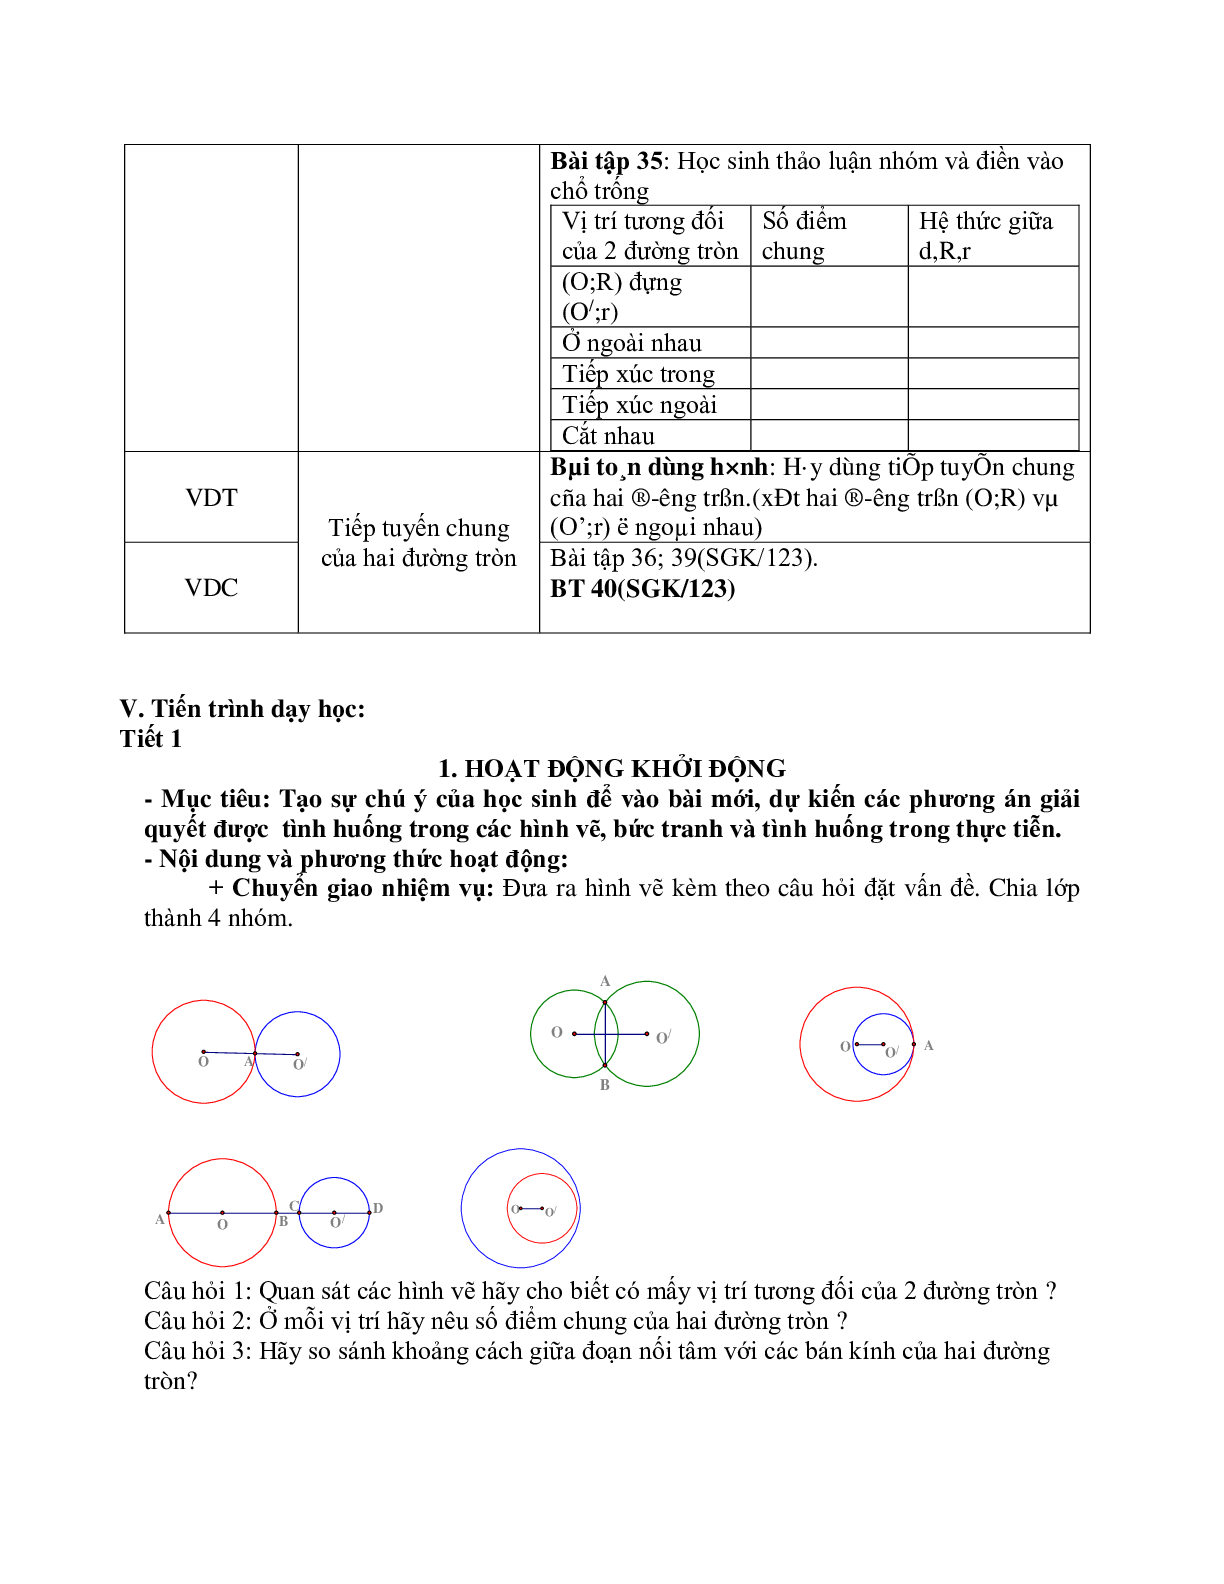 Giáo án Hình học 9 chương 2 bài 7: Vị trí tương đối của hai đường tròn mới nhất (trang 4)